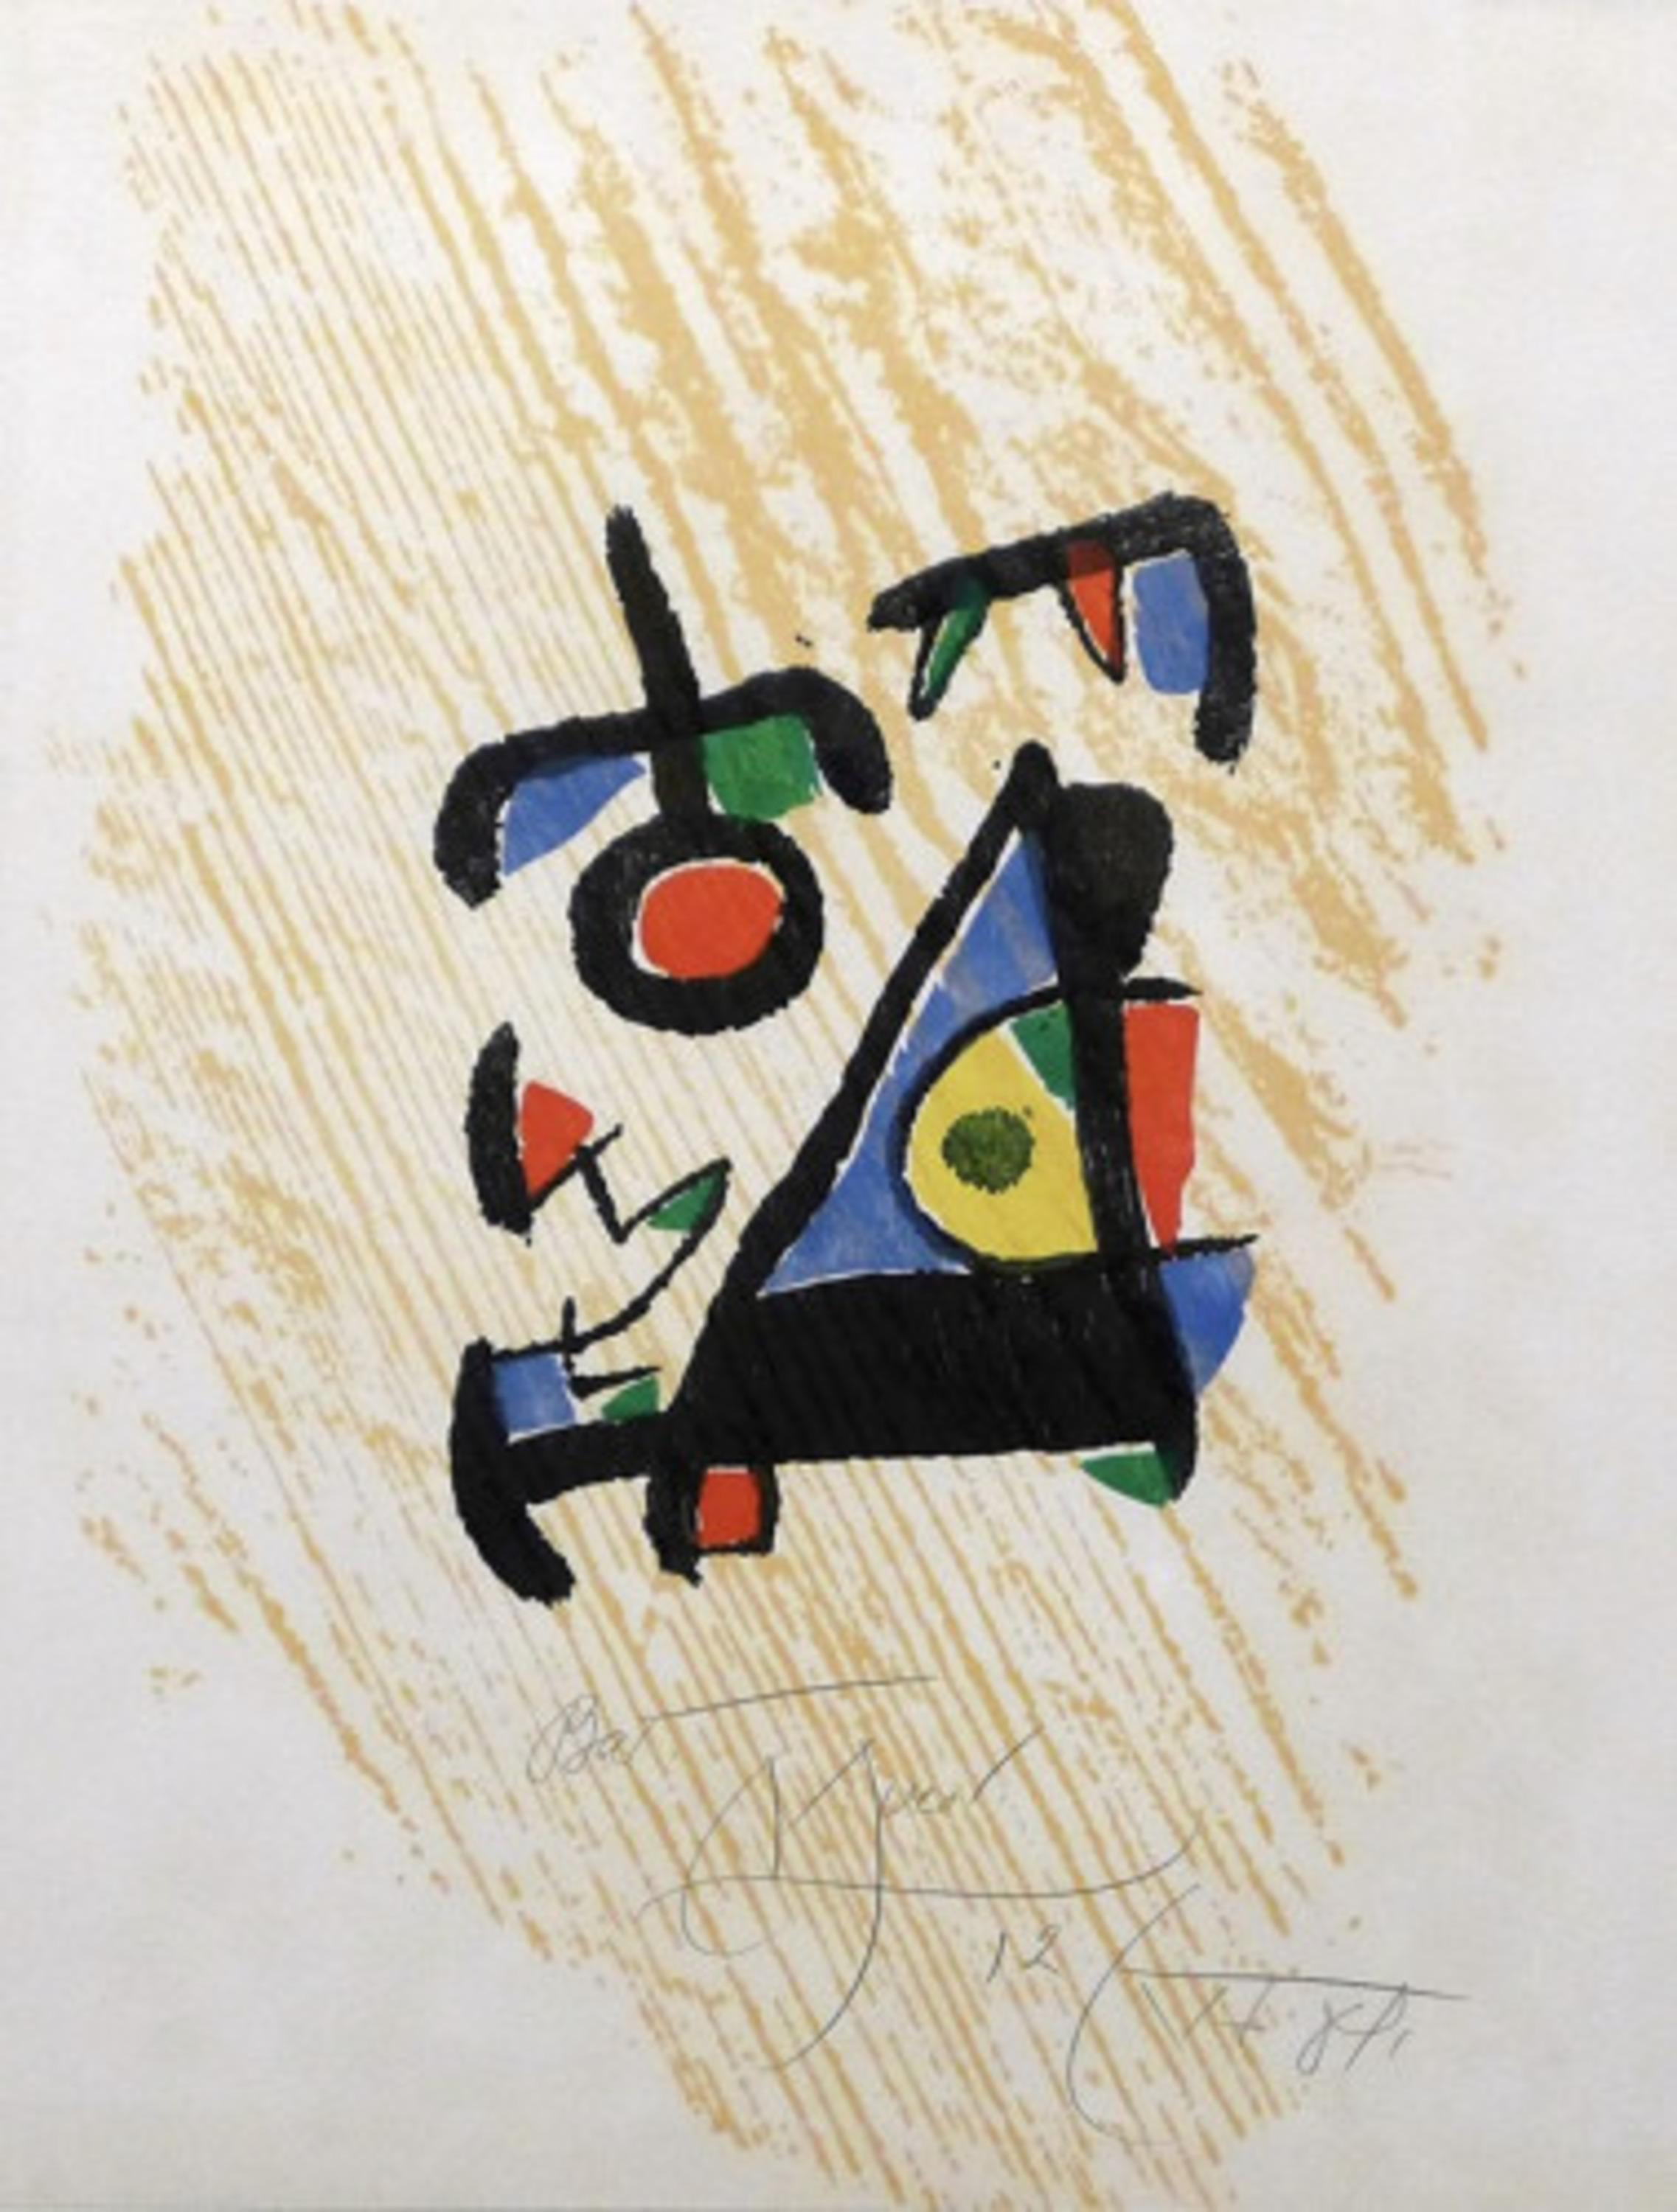 Miró Graveur III - Print by Joan Miró